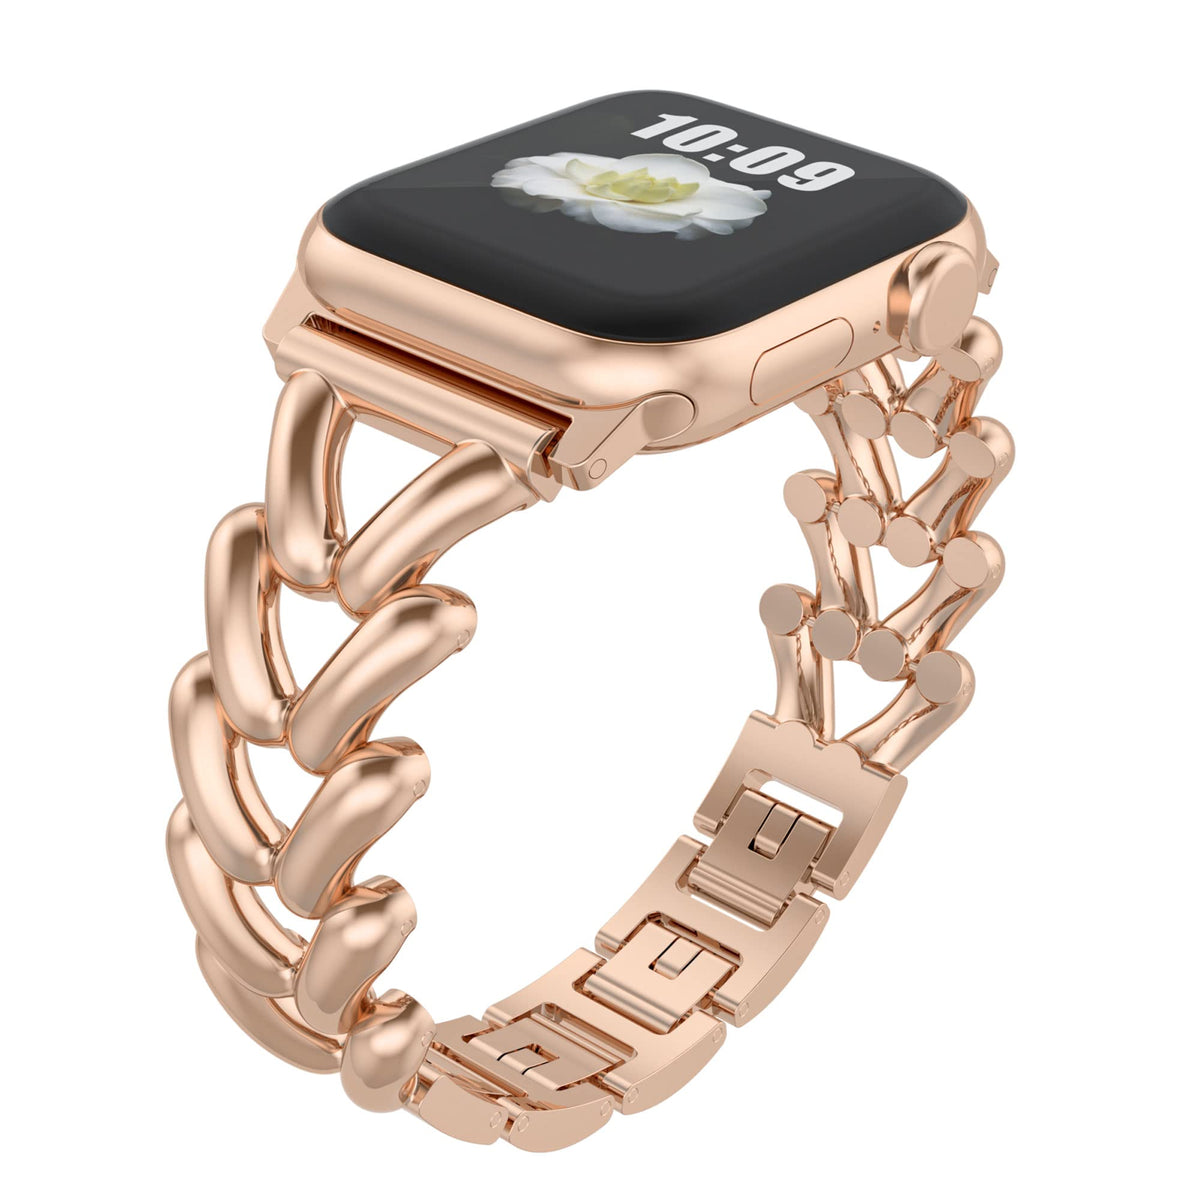 Apple watch Steel Bracelet Strap/Band